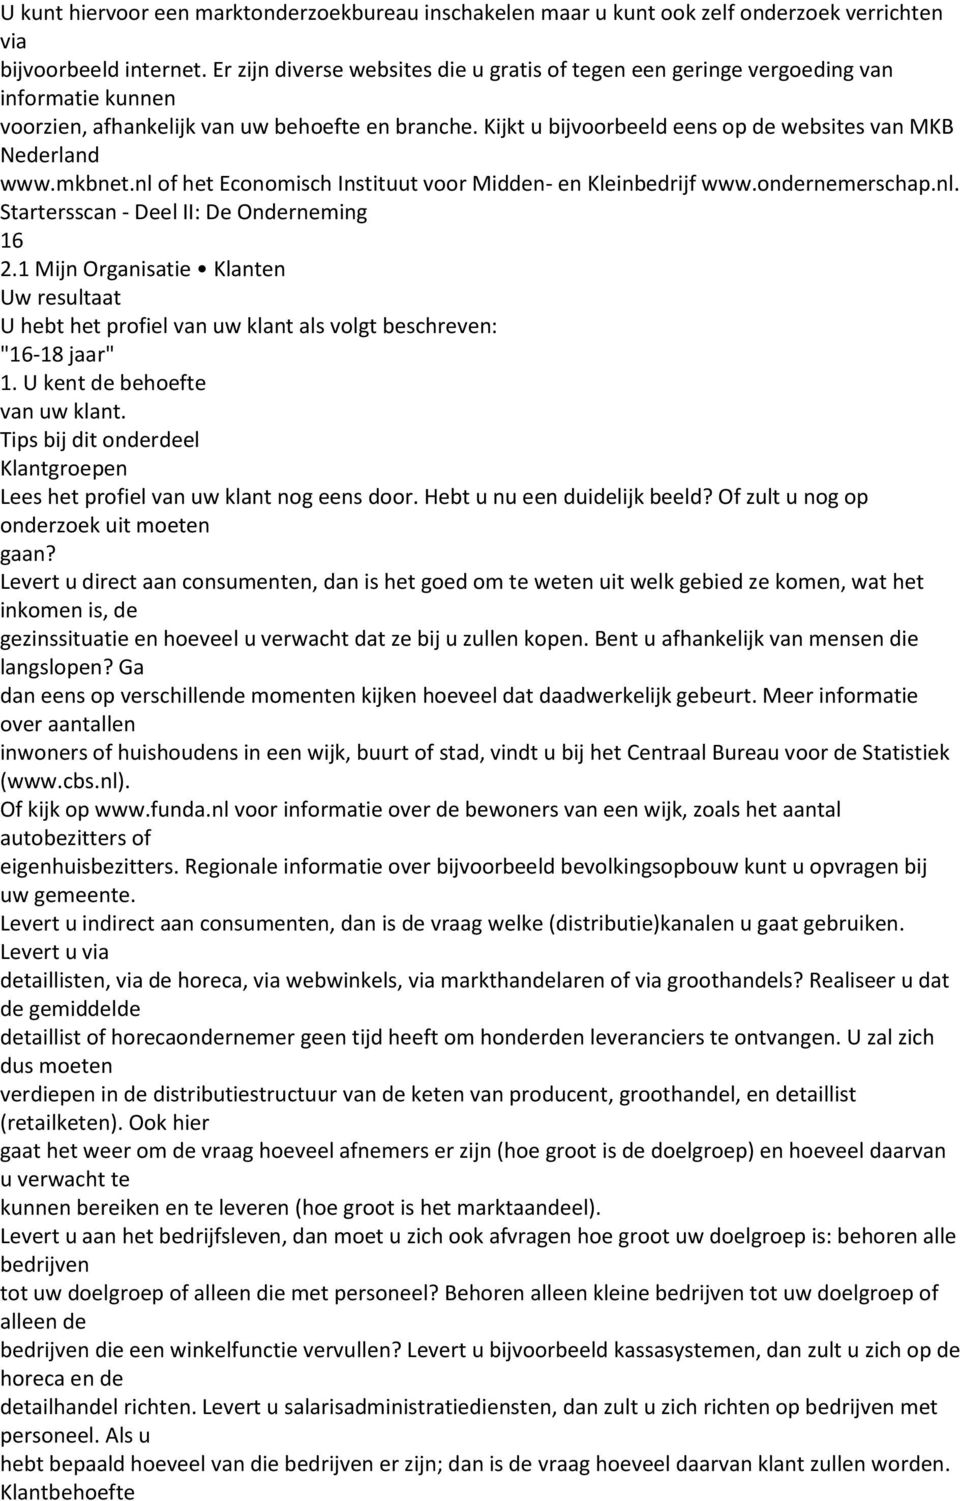 Kijkt u bijvoorbeeld eens op de websites van MKB Nederland www.mkbnet.nl of het Economisch Instituut voor Midden- en Kleinbedrijf www.ondernemerschap.nl. Startersscan - Deel II: De Onderneming 16 2.